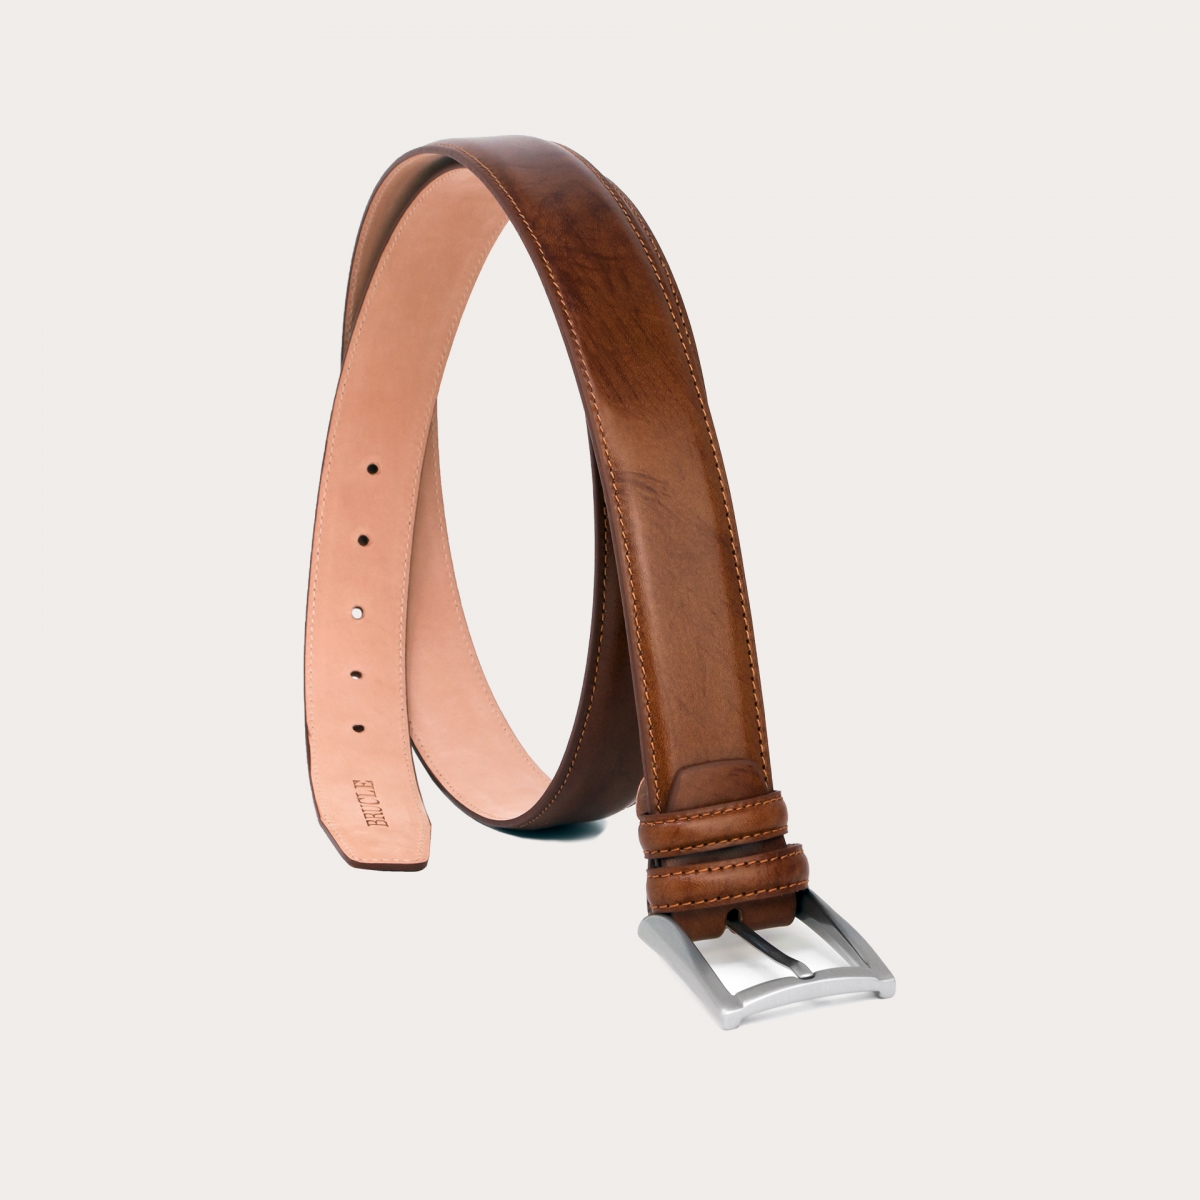 Refinado cinturón formal en piel pulida a mano, marrón oscuro